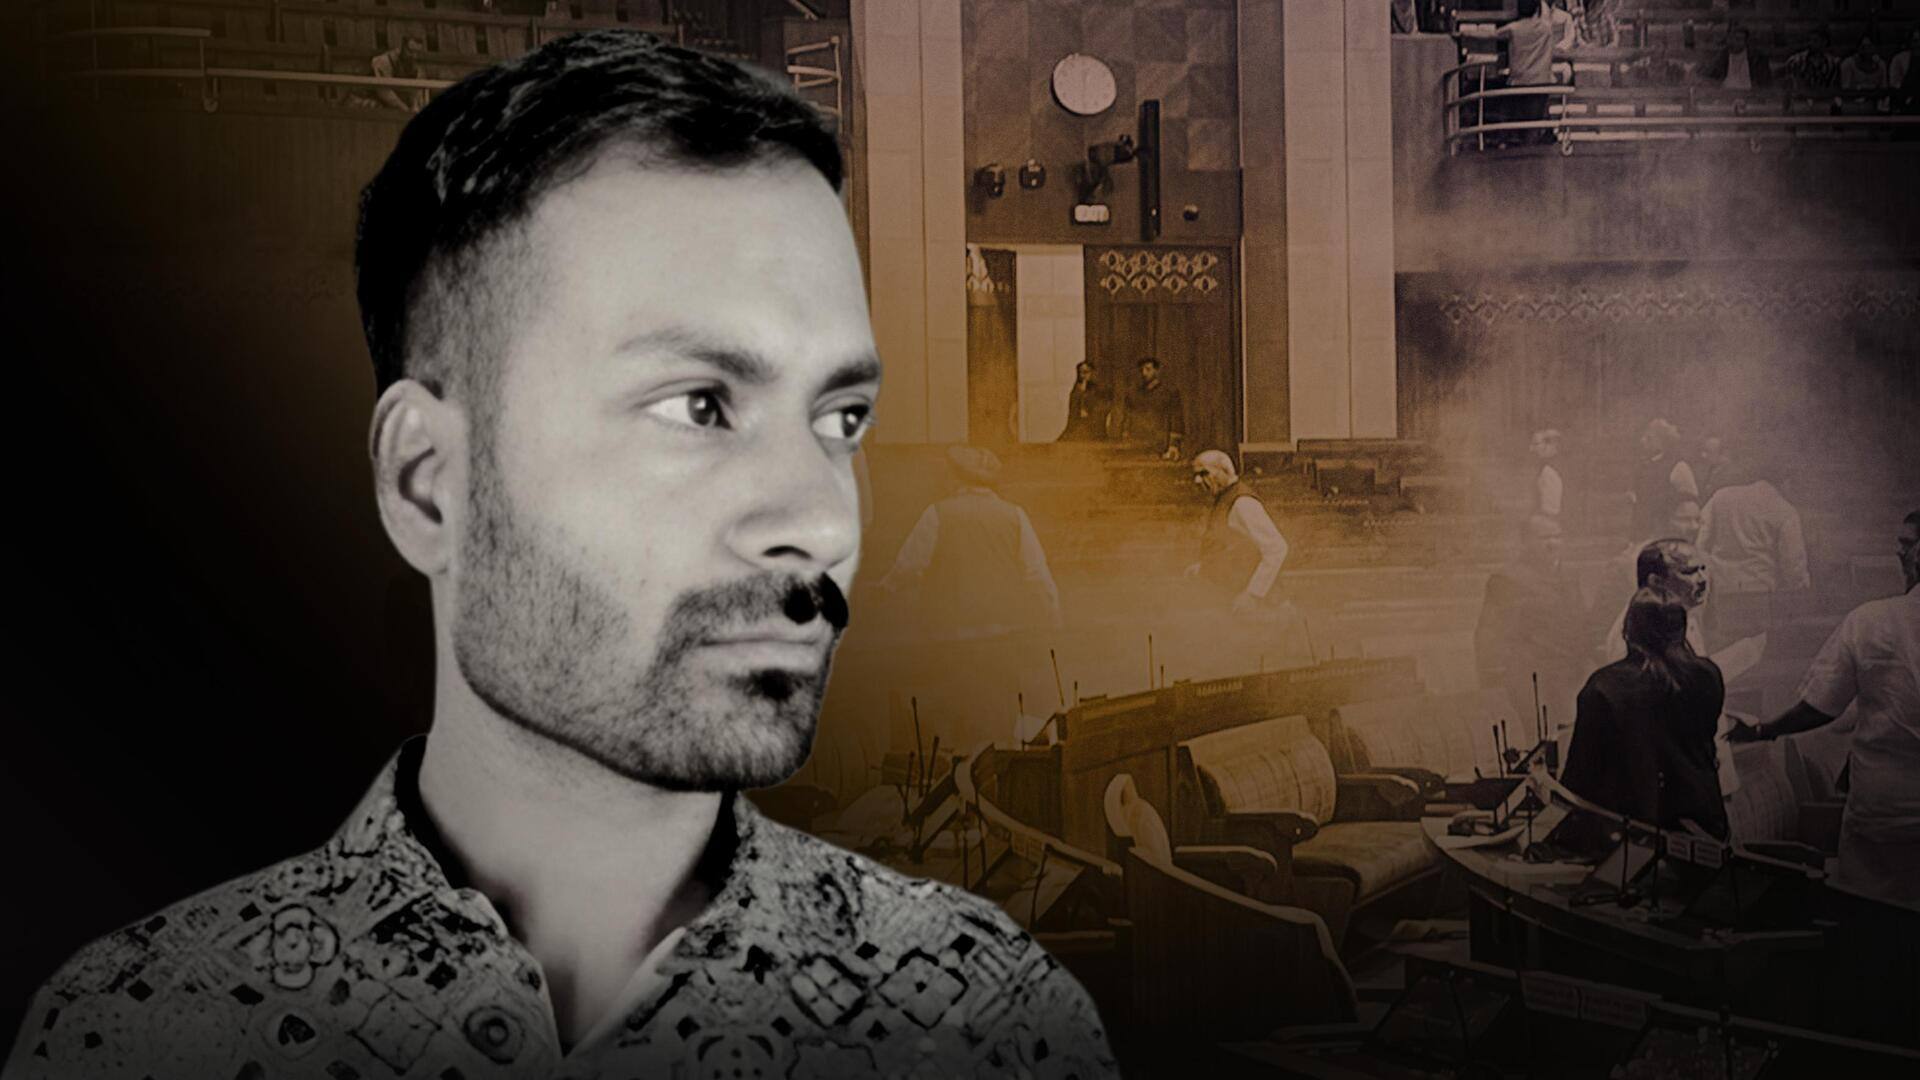 संसद की सुरक्षा में सेंध: कौन है महेश कुमावत और क्यों किया गया गिरफ्तार?